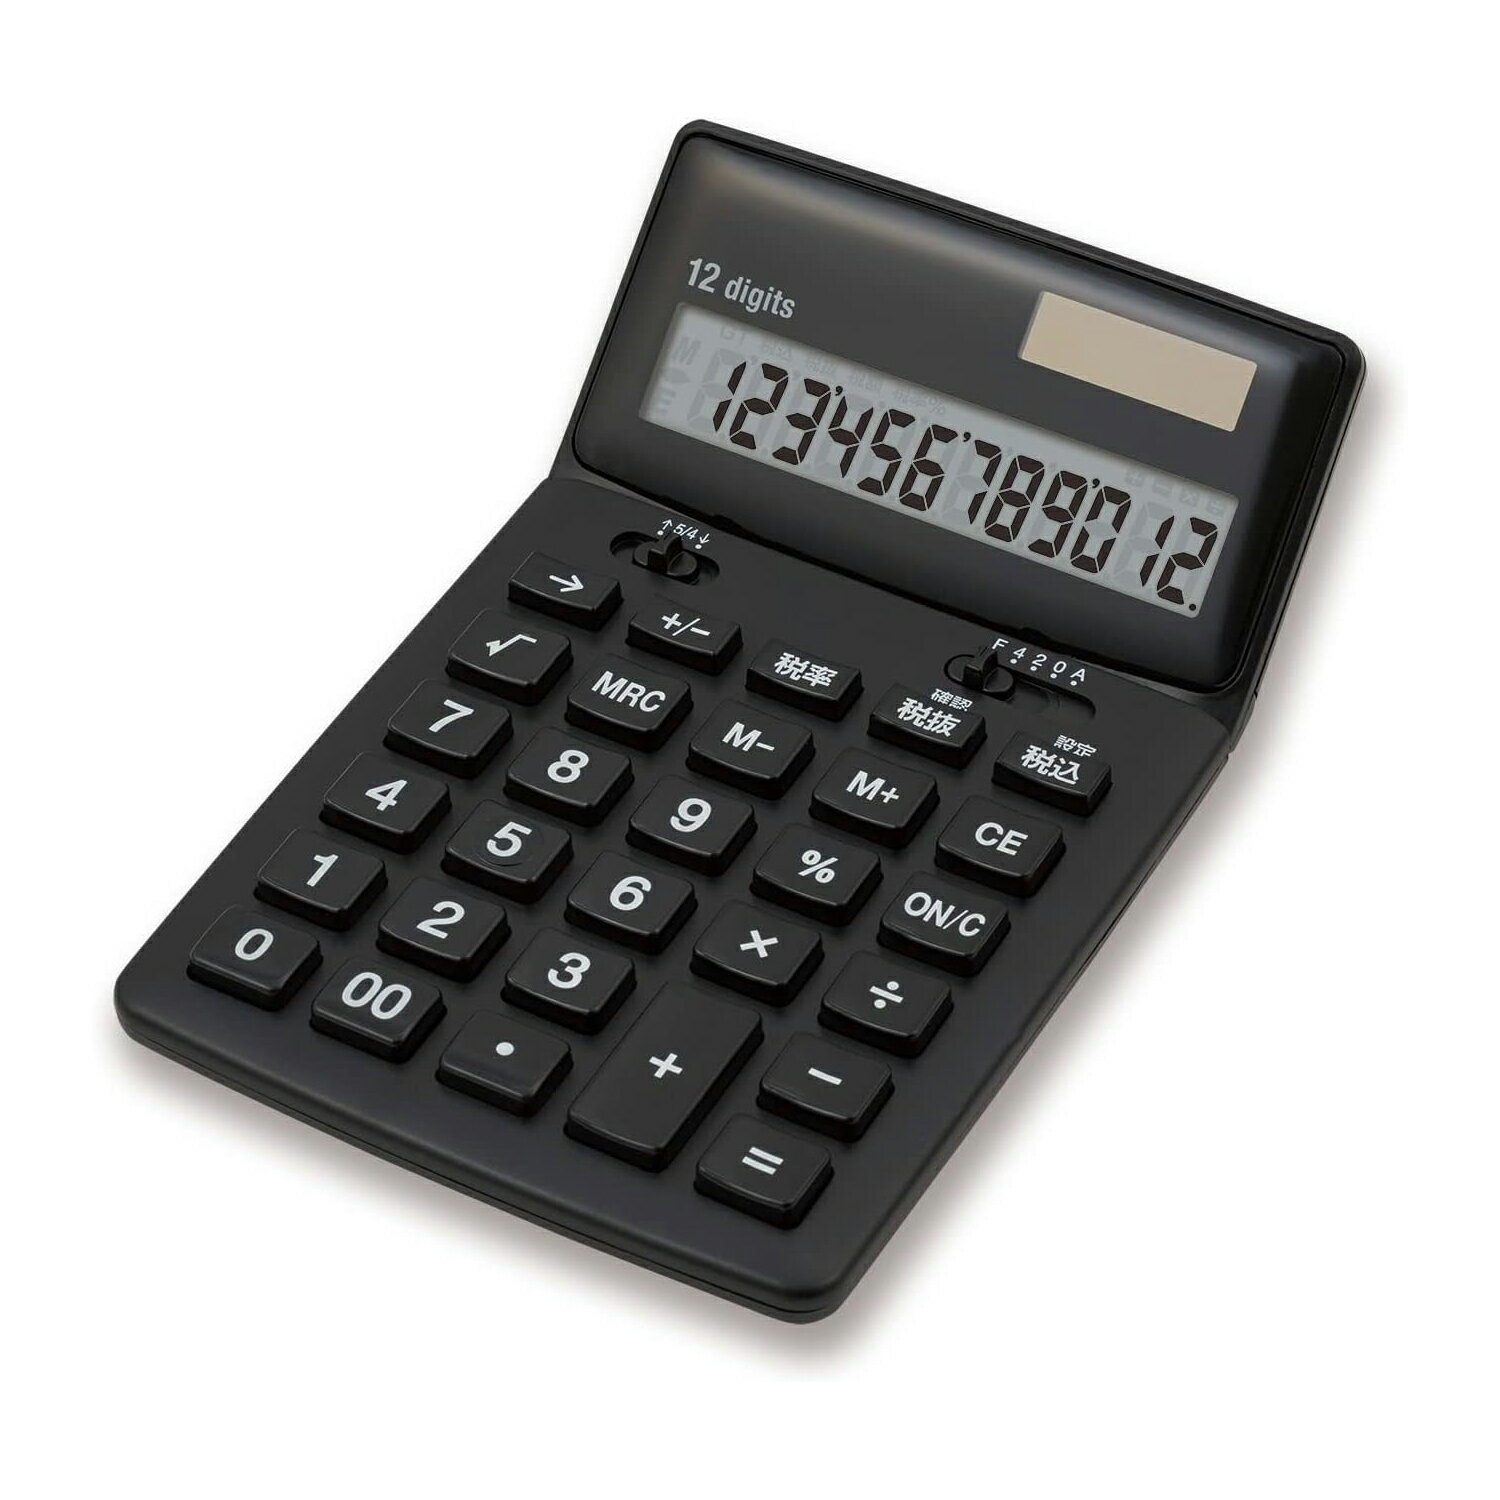 アスカ ビジネス電卓 抗菌電卓 12桁 税計算 チルト付き ルート計算 メモリー機能 ブラック C1249BK